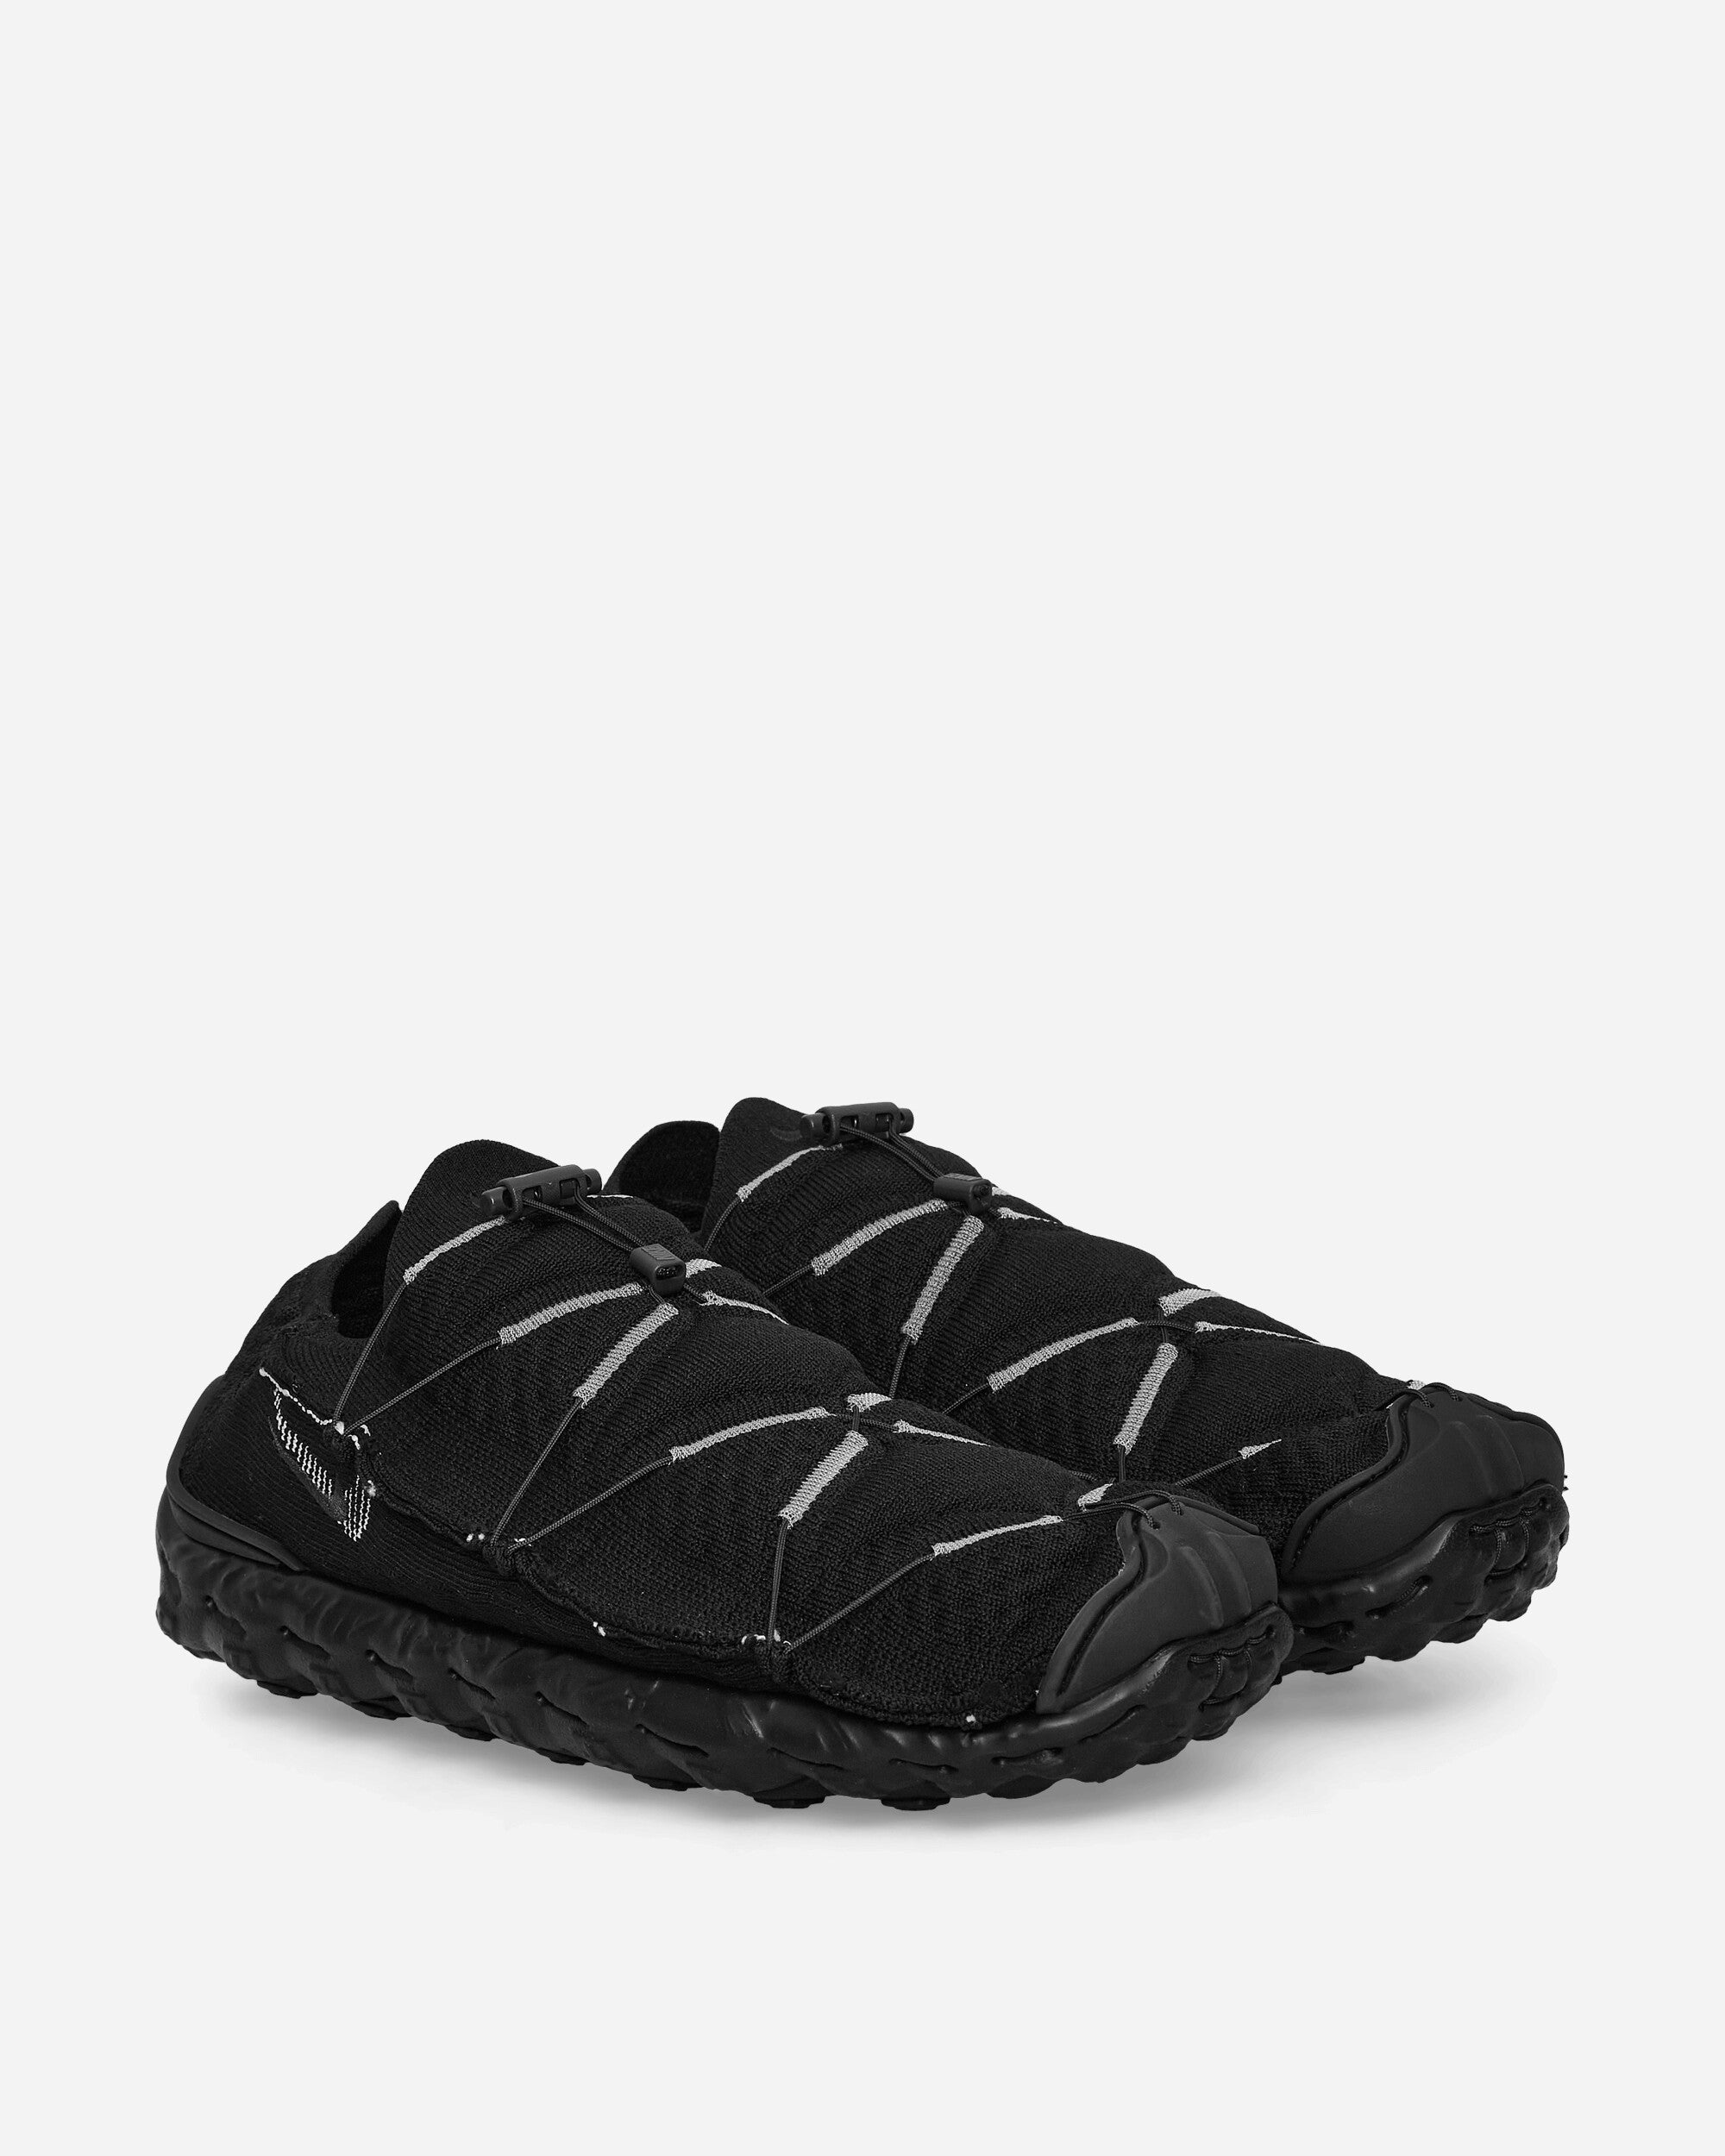 Nike Ispa Mindbody Black/Anthracite/Sail Sneakers Low DH7546-003